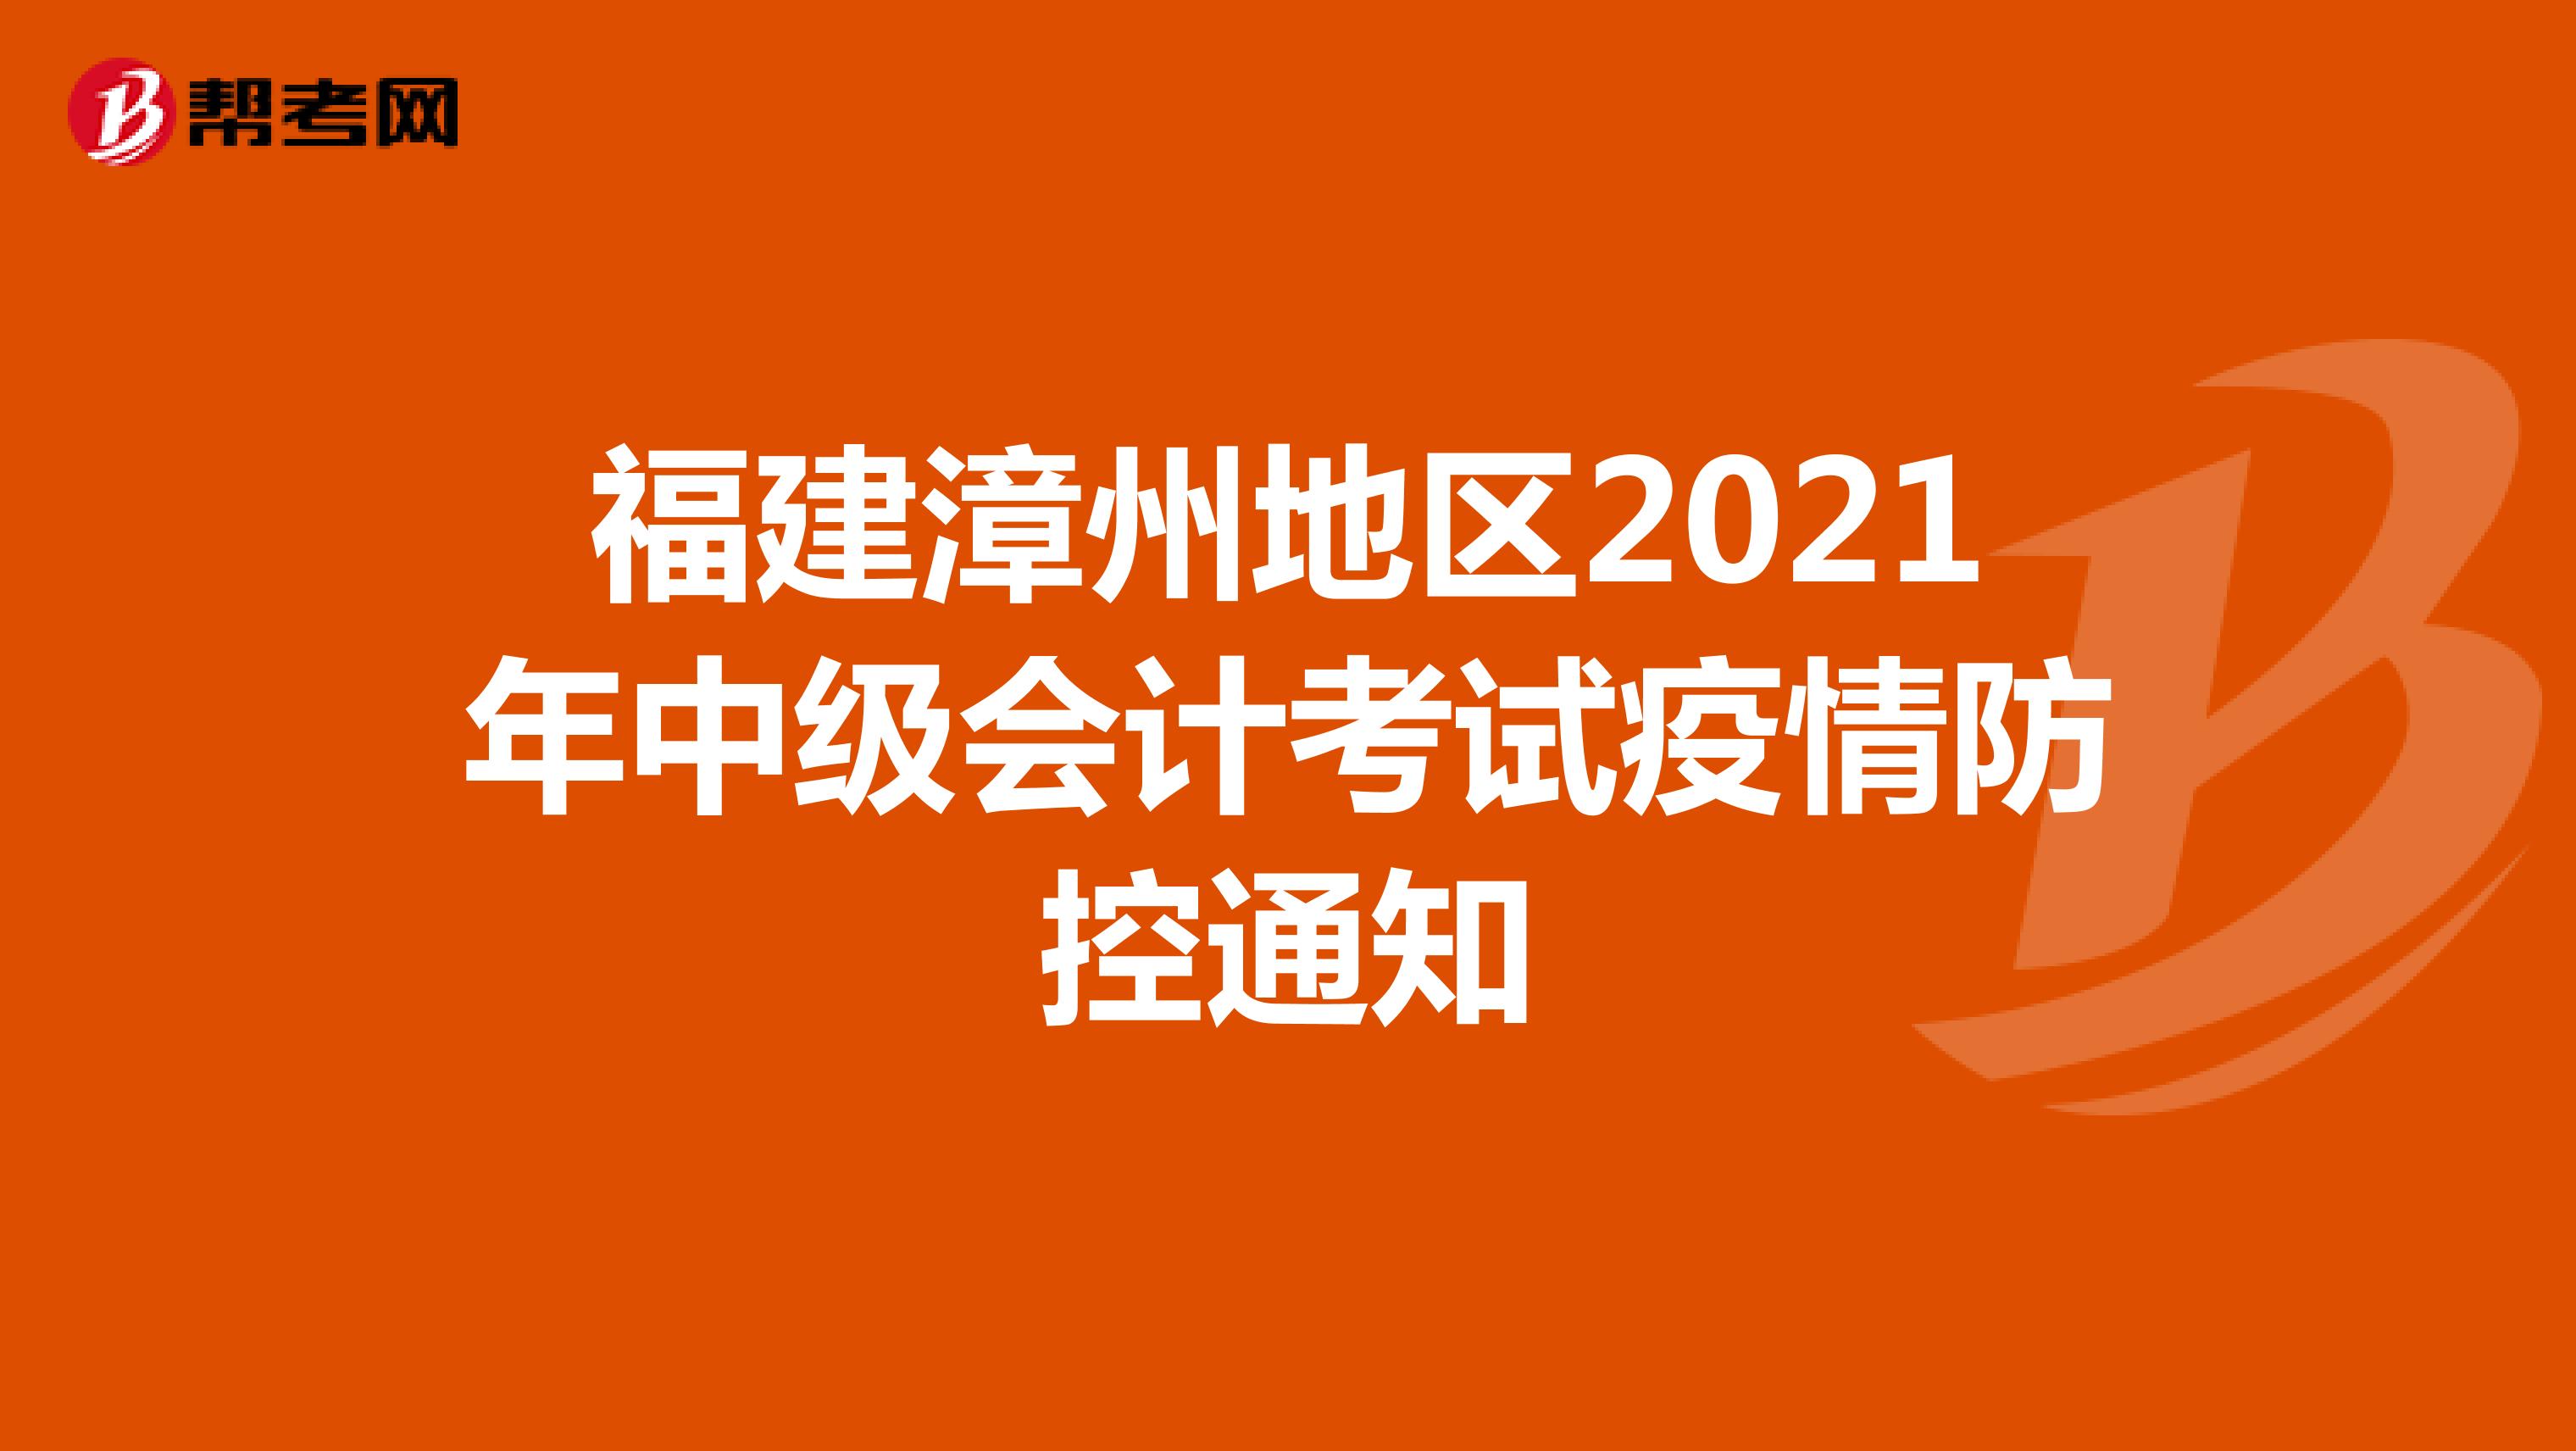 福建漳州地区2021年中级会计考试疫情防控通知